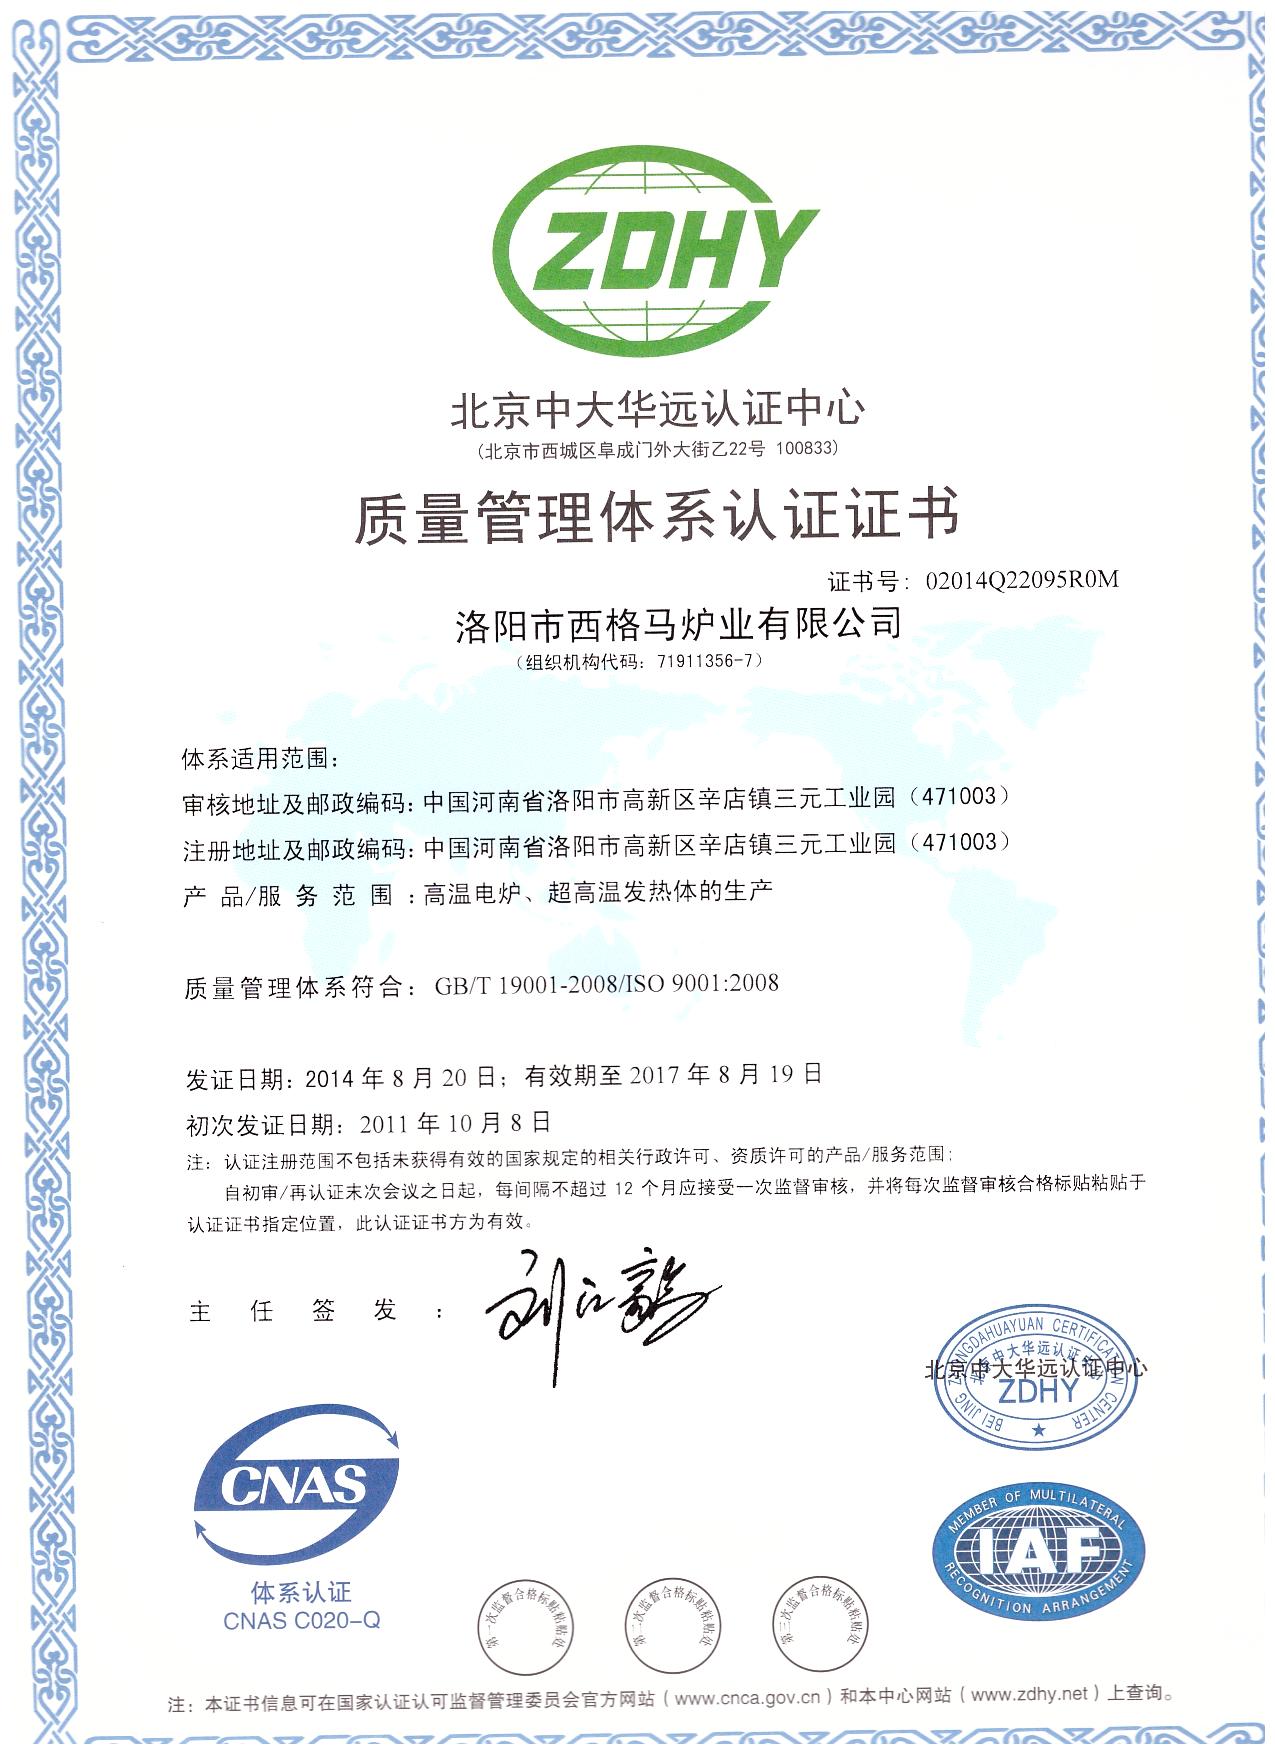  高温炉生产质量管理体系认证